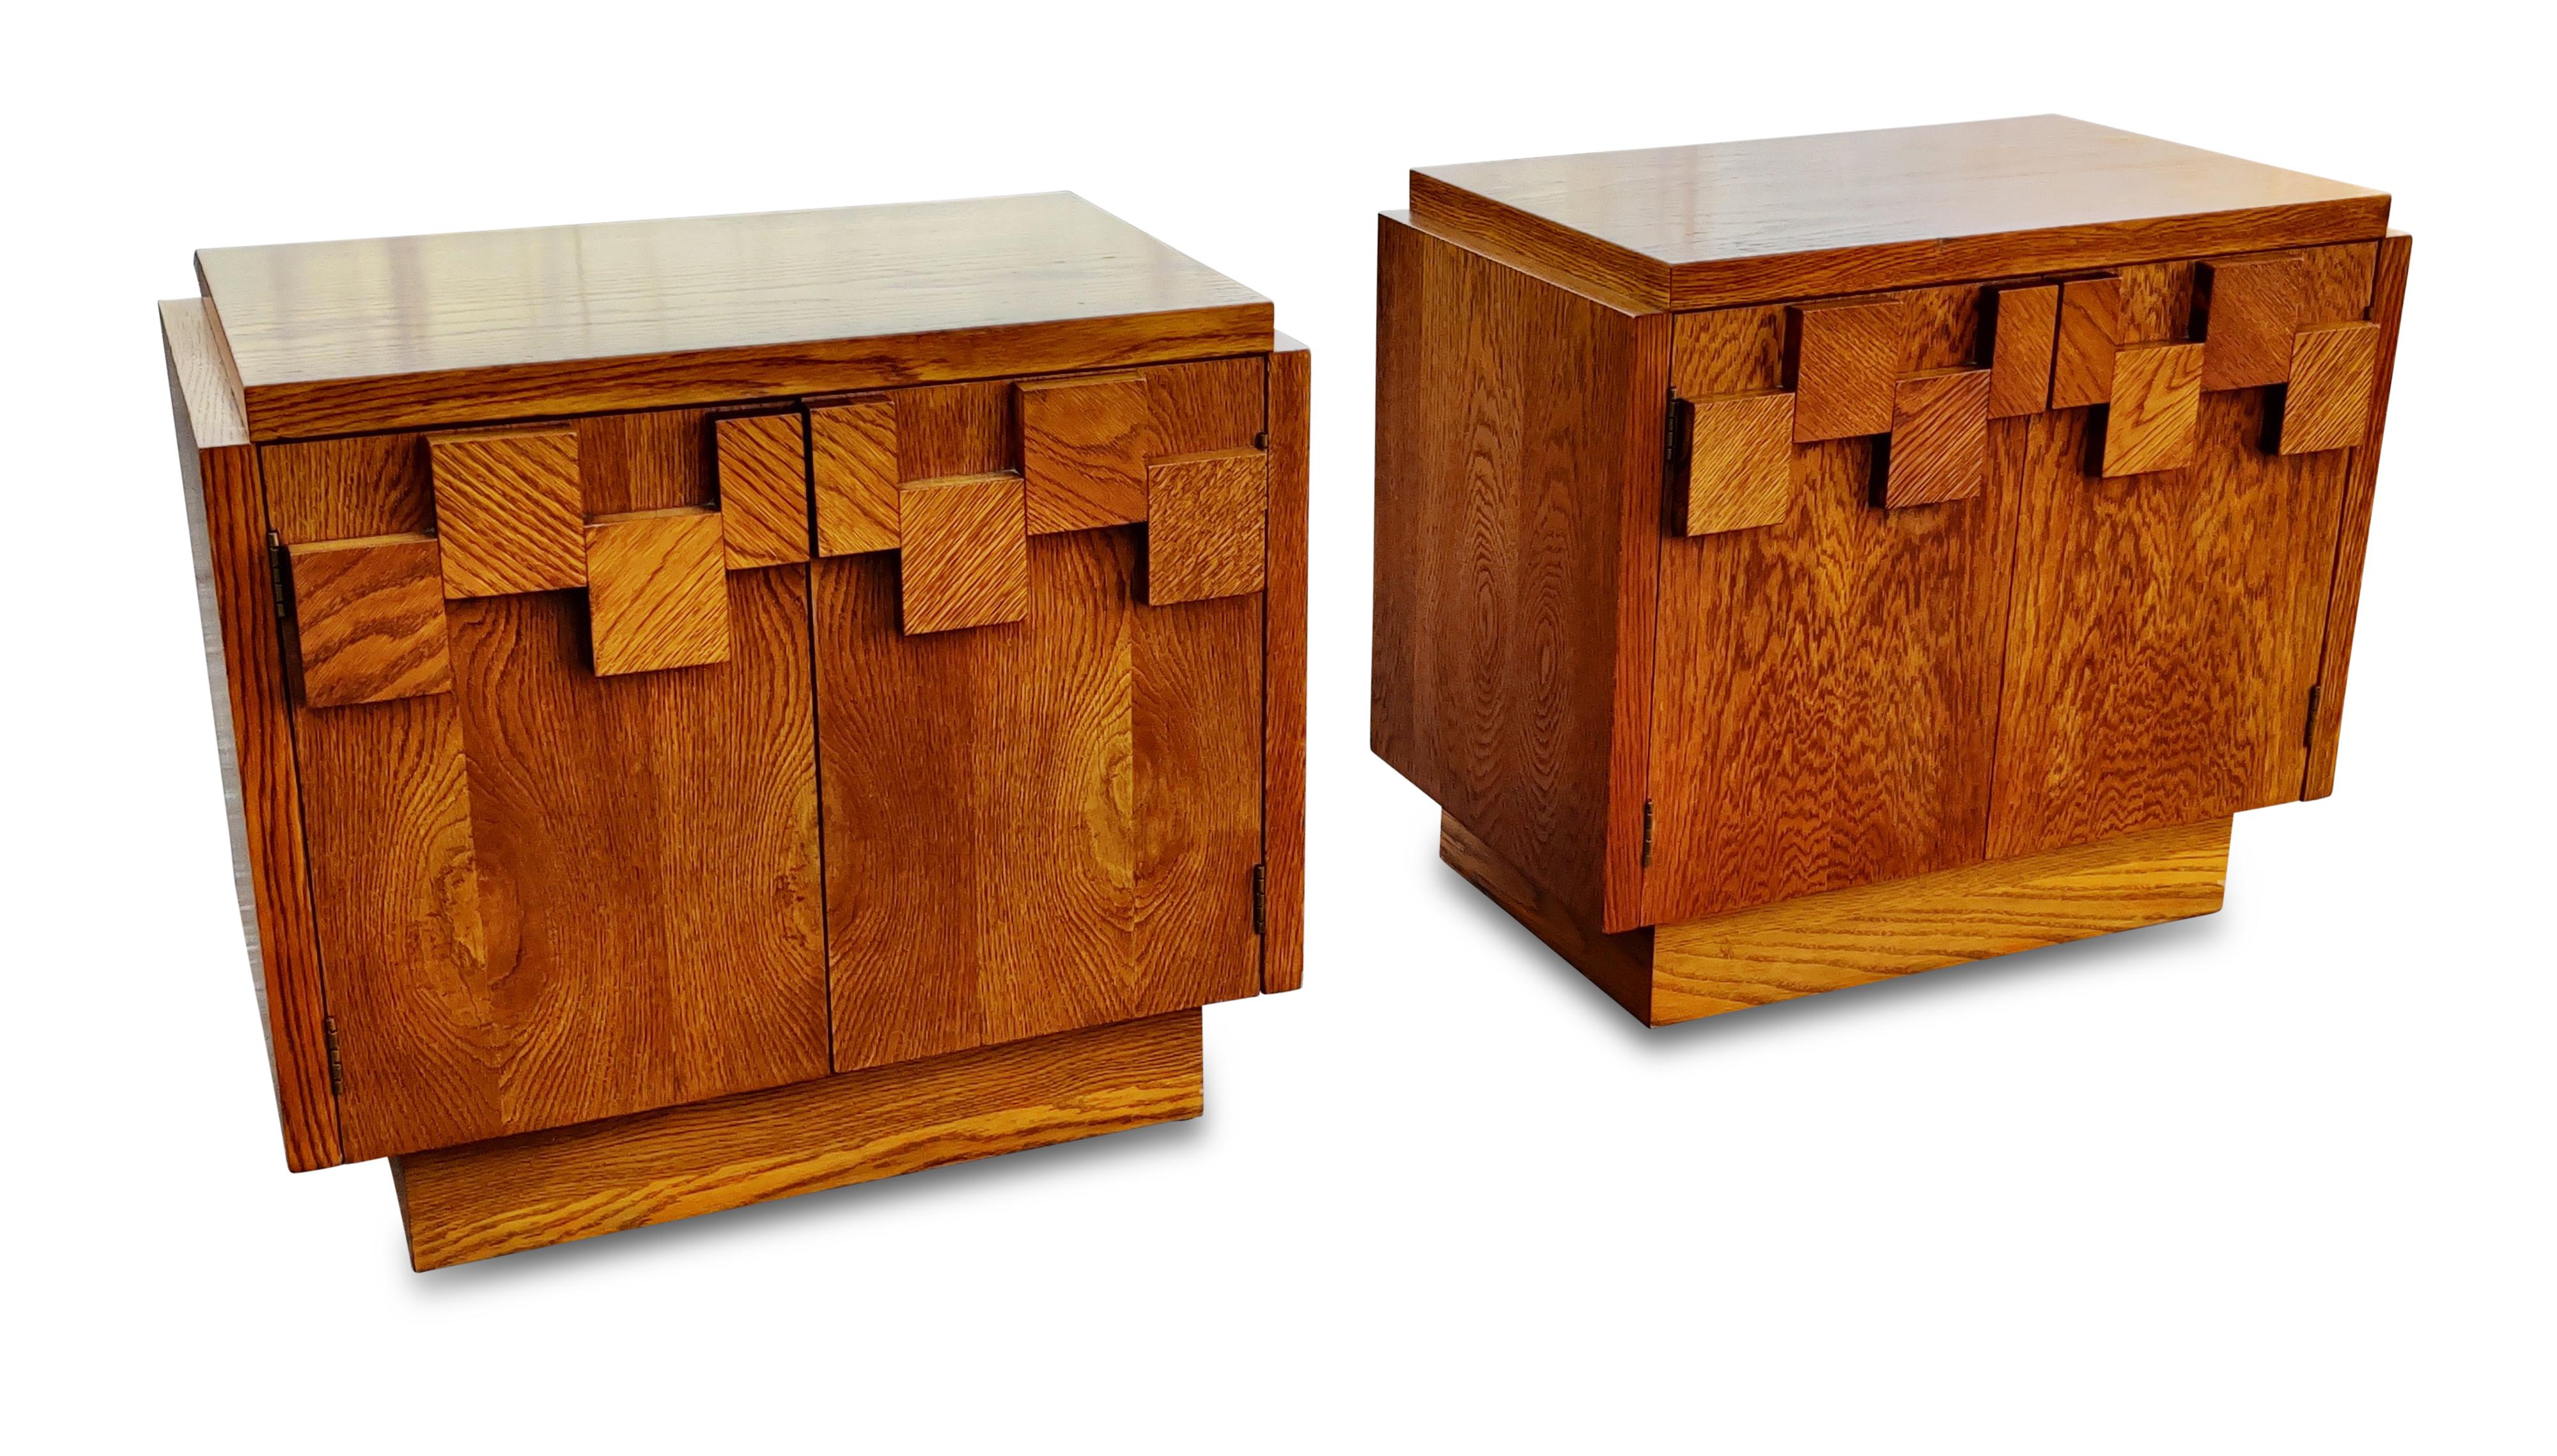 Cette paire de tables de nuit a été conçue dans le style Brutalist rendu iconique par Paul Evans, et fabriquée par Lane USA, vers les années 1970. Fabriqués avec des blocs de chêne variés attachés aux façades, ils donnent un aspect imposant et